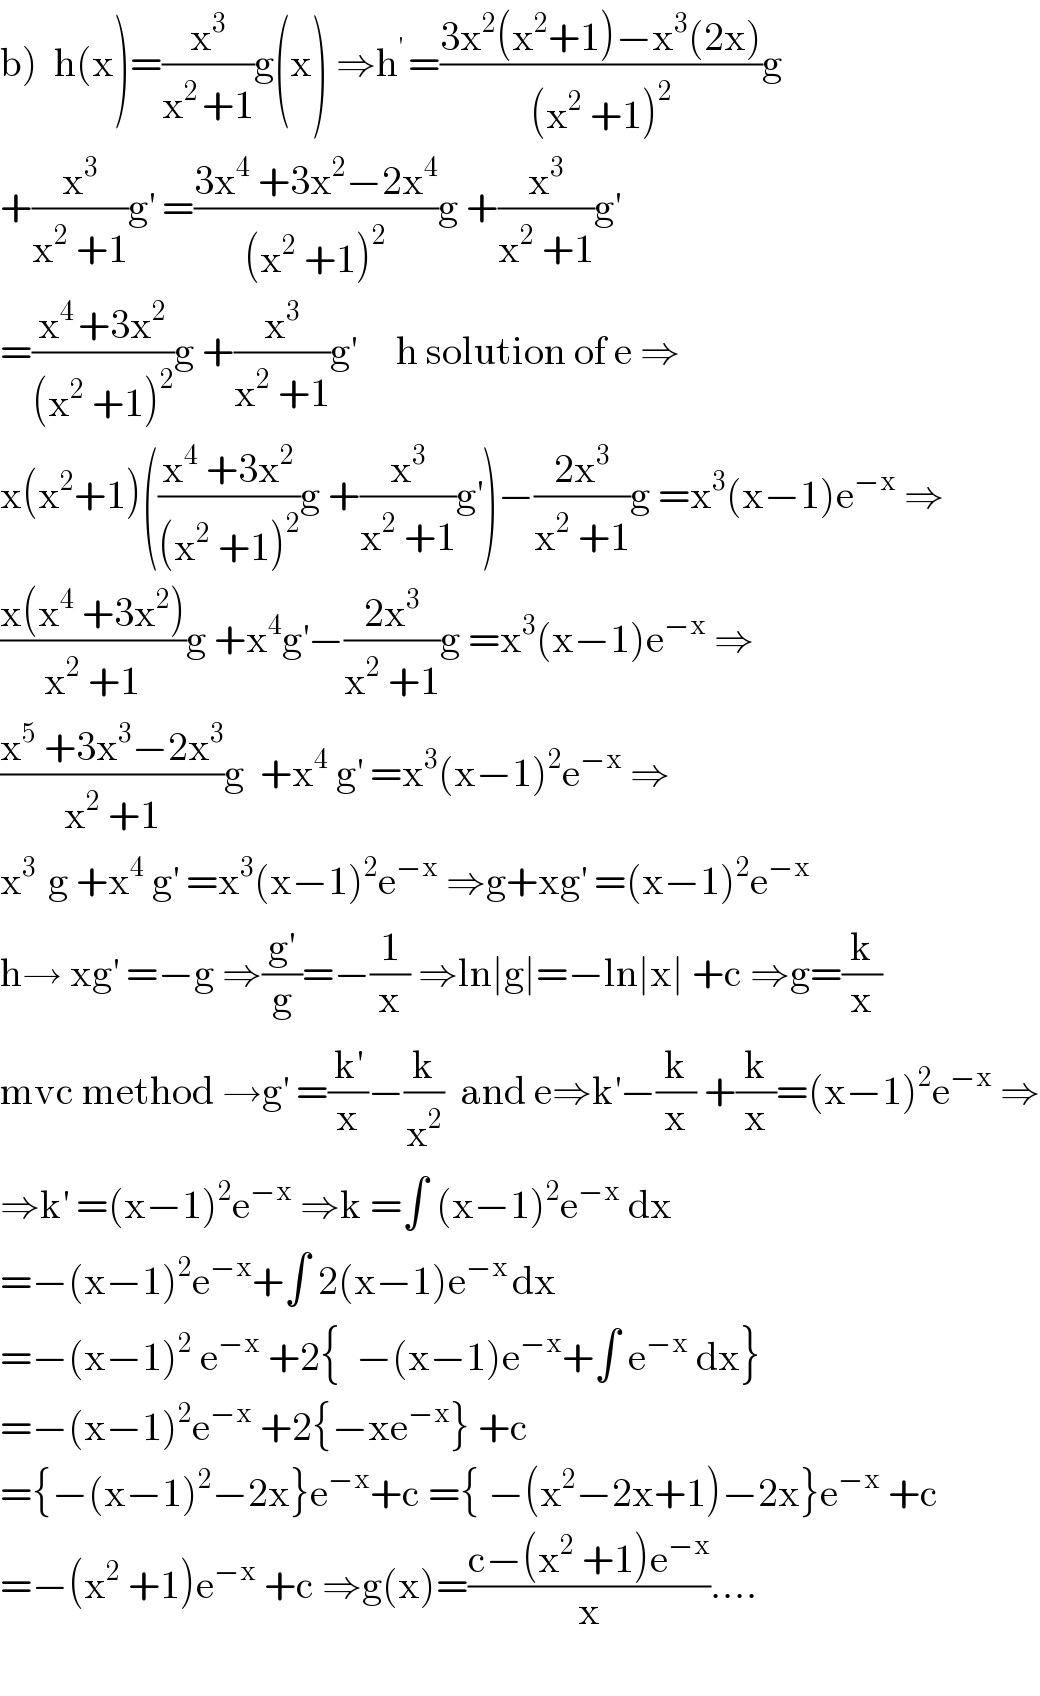 b)  h(x)=(x^3 /(x^(2 ) +1))g(x) ⇒h^(′ ) =((3x^2 (x^2 +1)−x^3 (2x))/((x^2  +1)^2 ))g   +(x^3 /(x^2  +1))g^′  =((3x^4  +3x^2 −2x^4 )/((x^2  +1)^2 ))g +(x^3 /(x^2  +1))g^′   =((x^(4 ) +3x^2 )/((x^2  +1)^2 ))g +(x^3 /(x^2  +1))g^′      h solution of e ⇒  x(x^2 +1)(((x^4  +3x^2 )/((x^2  +1)^2 ))g +(x^3 /(x^2  +1))g^′ )−((2x^3 )/(x^2  +1))g =x^3 (x−1)e^(−x)  ⇒  ((x(x^4  +3x^2 ))/(x^2  +1))g +x^4 g^′ −((2x^3 )/(x^2  +1))g =x^3 (x−1)e^(−x)  ⇒  ((x^5  +3x^3 −2x^3 )/(x^2  +1))g  +x^4  g^′  =x^3 (x−1)^2 e^(−x)  ⇒  x^(3 )  g +x^4  g^′  =x^3 (x−1)^2 e^(−x)  ⇒g+xg^′  =(x−1)^2 e^(−x)   h→ xg^′  =−g ⇒(g^′ /g)=−(1/x) ⇒ln∣g∣=−ln∣x∣ +c ⇒g=(k/x)  mvc method →g^′  =(k^′ /x)−(k/x^2 )  and e⇒k^′ −(k/x) +(k/x)=(x−1)^2 e^(−x)  ⇒  ⇒k^′  =(x−1)^2 e^(−x)  ⇒k =∫ (x−1)^2 e^(−x)  dx  =−(x−1)^2 e^(−x) +∫ 2(x−1)e^(−x ) dx  =−(x−1)^2  e^(−x)  +2{  −(x−1)e^(−x) +∫ e^(−x)  dx}  =−(x−1)^2 e^(−x)  +2{−xe^(−x) } +c  ={−(x−1)^2 −2x}e^(−x) +c ={ −(x^2 −2x+1)−2x}e^(−x)  +c   =−(x^2  +1)e^(−x)  +c ⇒g(x)=((c−(x^2  +1)e^(−x) )/x)....    